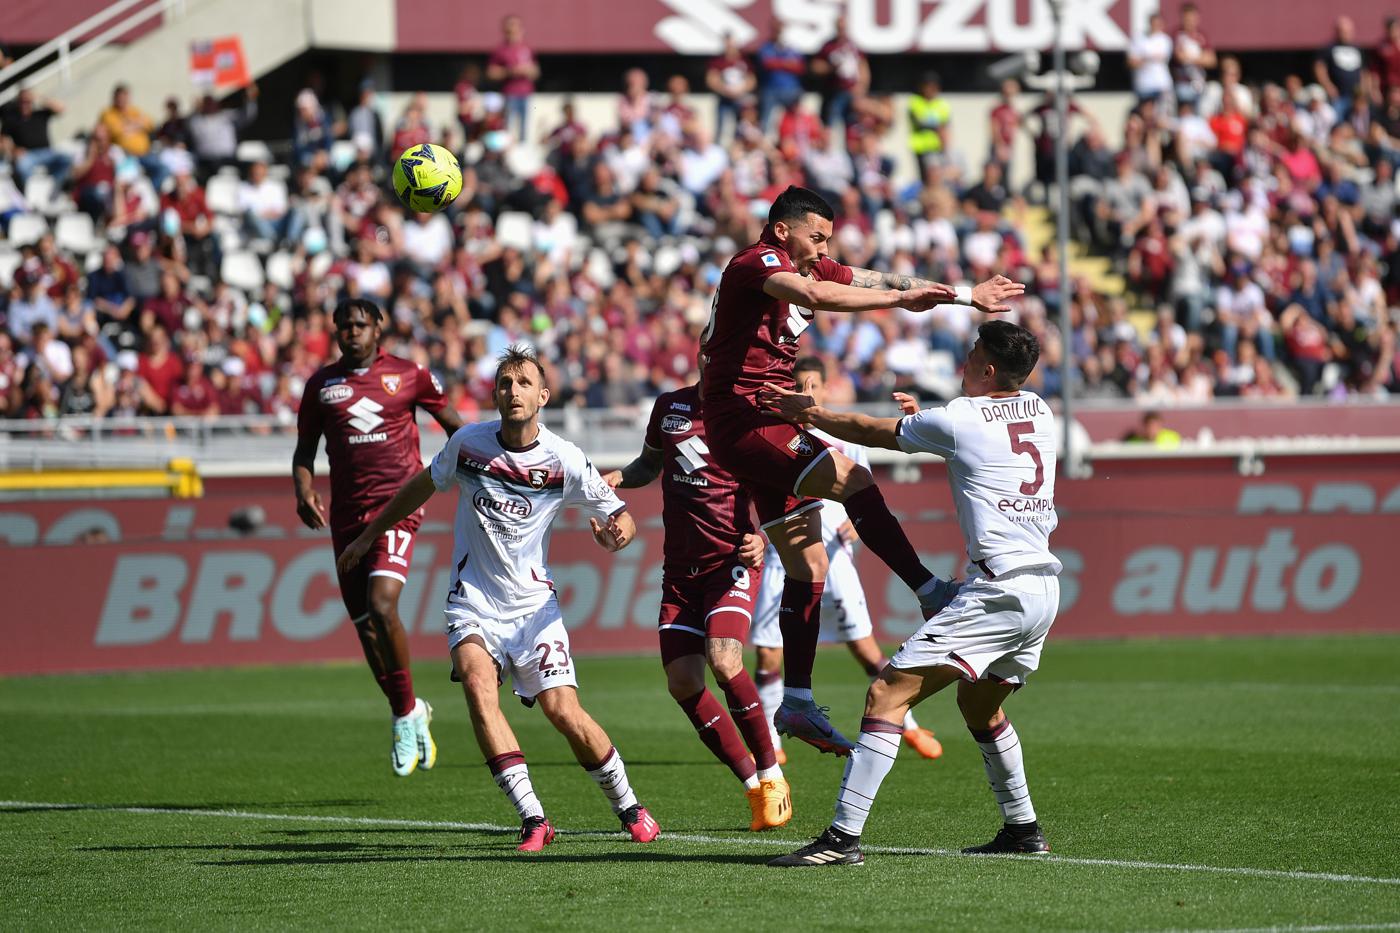 Torino v Salernitana - 1-1. Mistrzostwo Włoch, runda 30. Przegląd meczu, statystyki meczowe